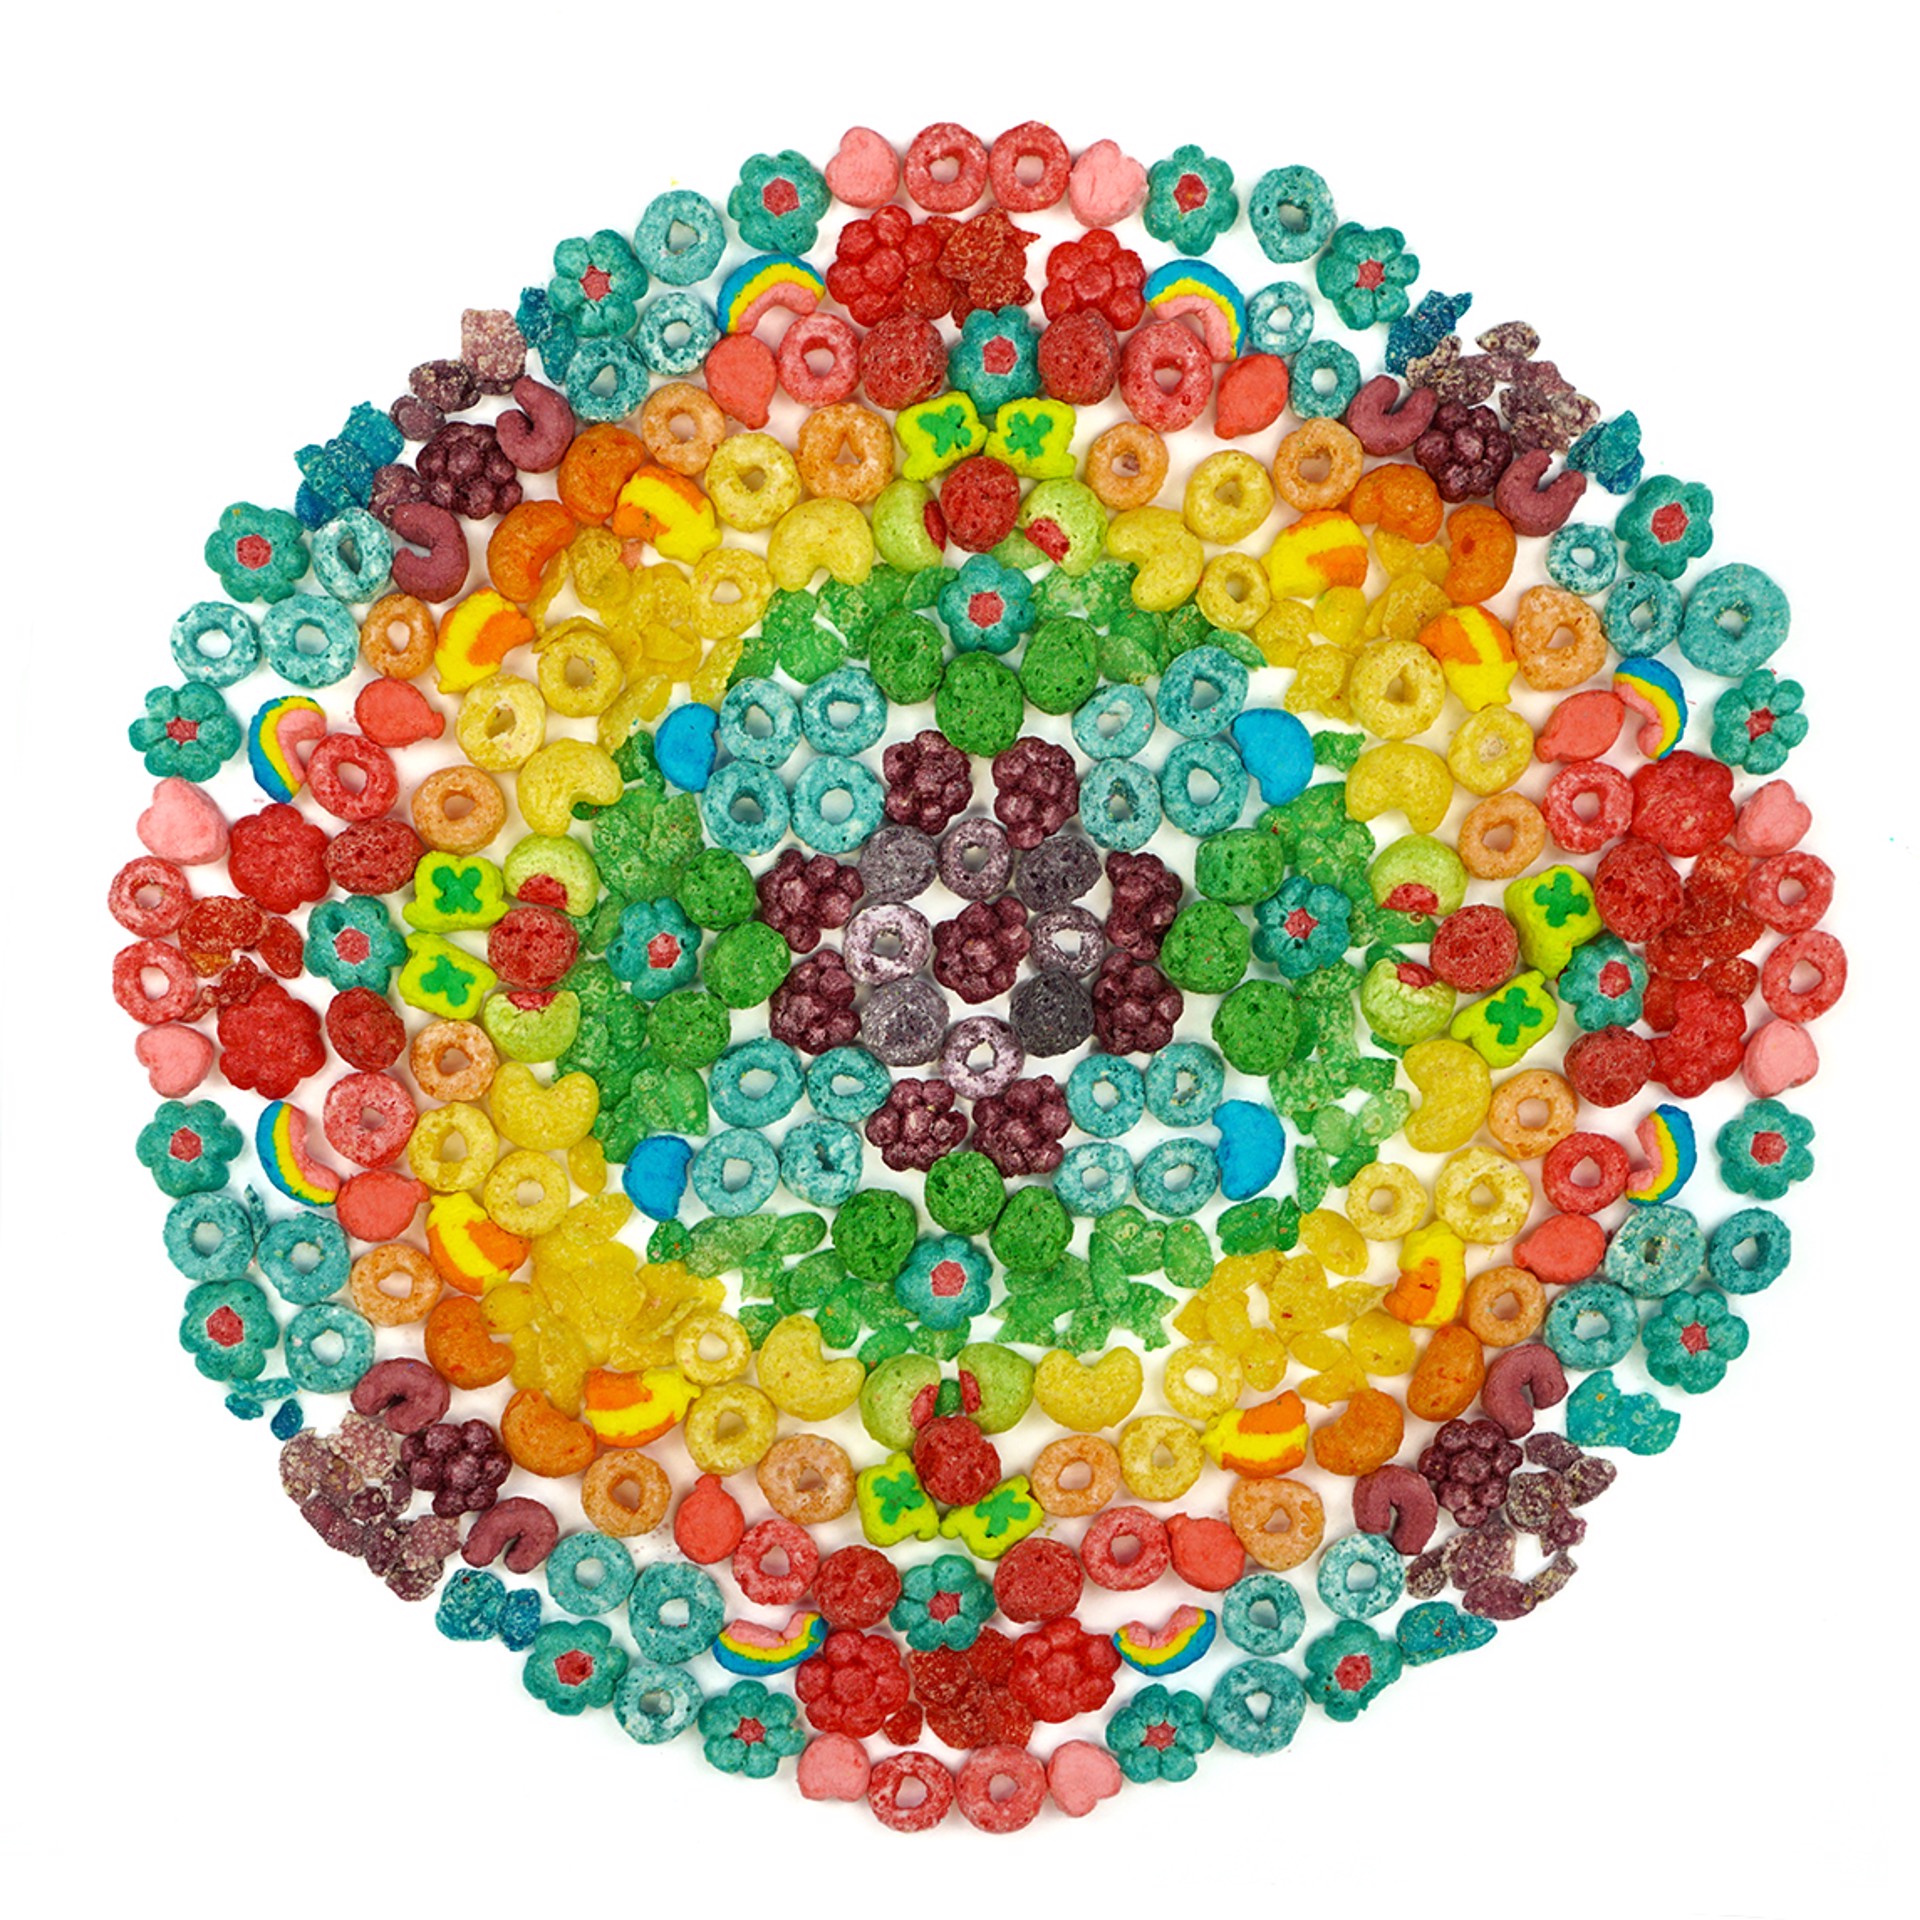 Rainbow Cereal by Paula Brett